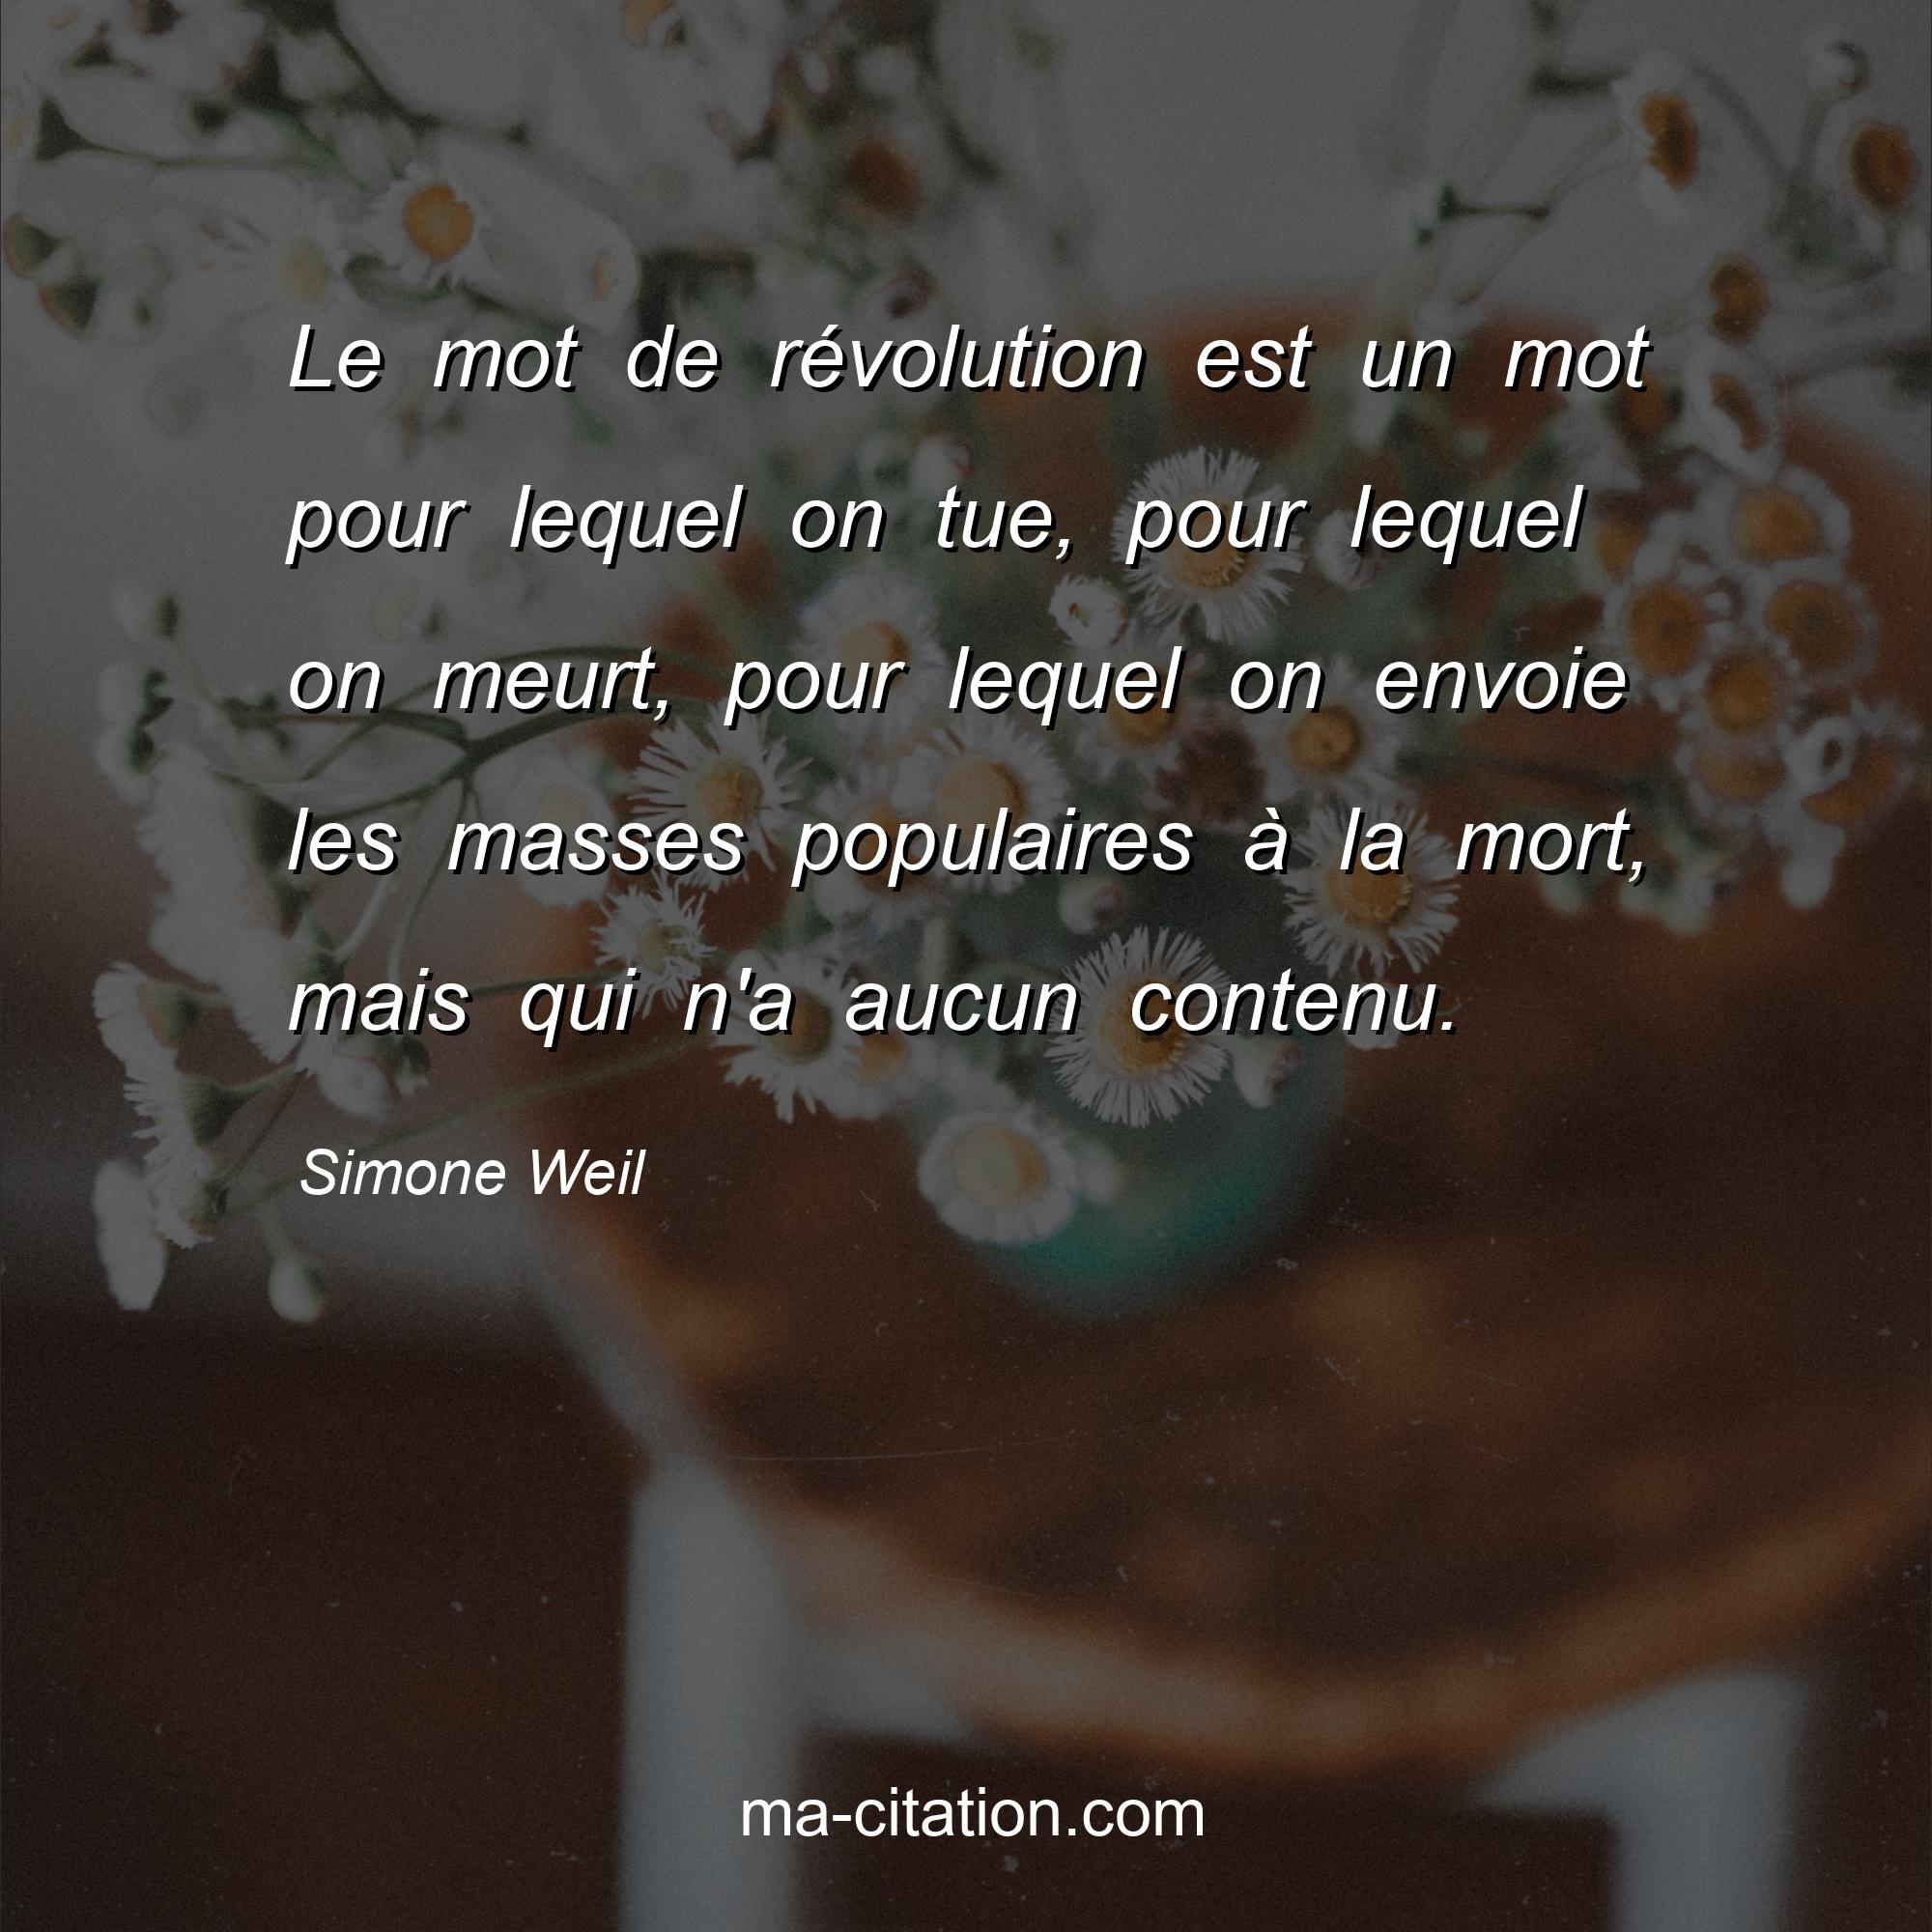 Simone Weil : Le mot de révolution est un mot pour lequel on tue, pour lequel on meurt, pour lequel on envoie les masses populaires à la mort, mais qui n'a aucun contenu.